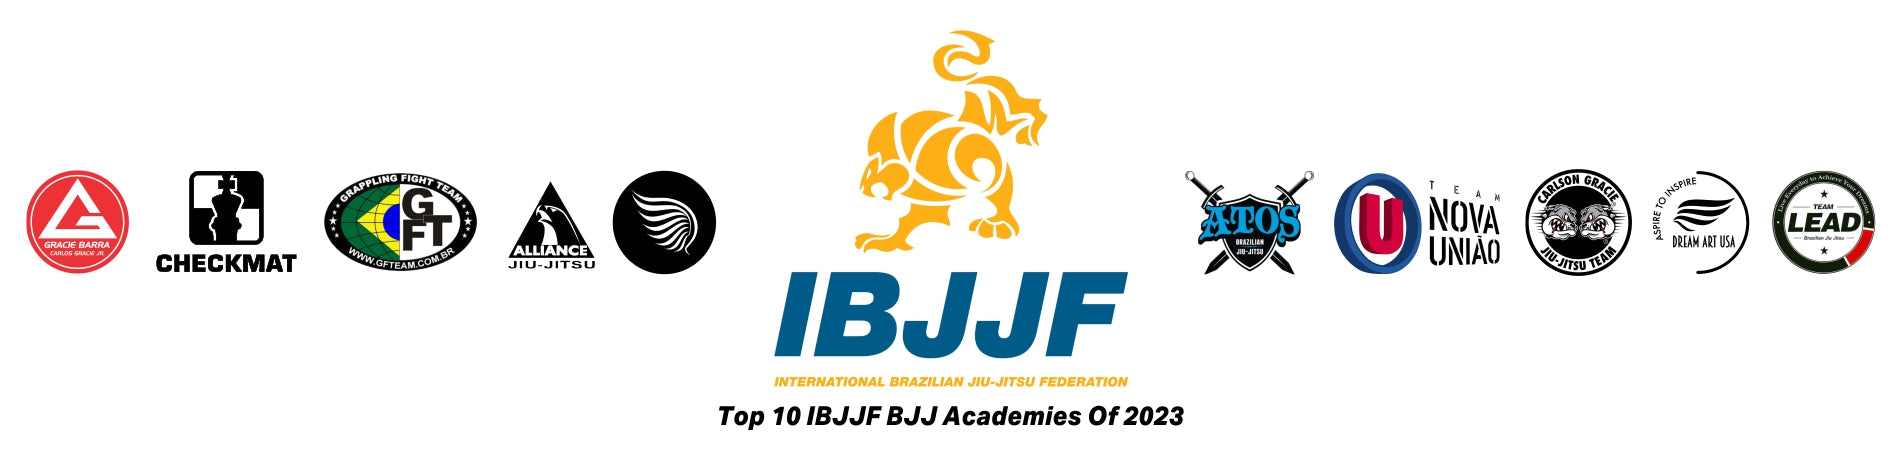 2023 Top 10 IBJJF BJJ Academies